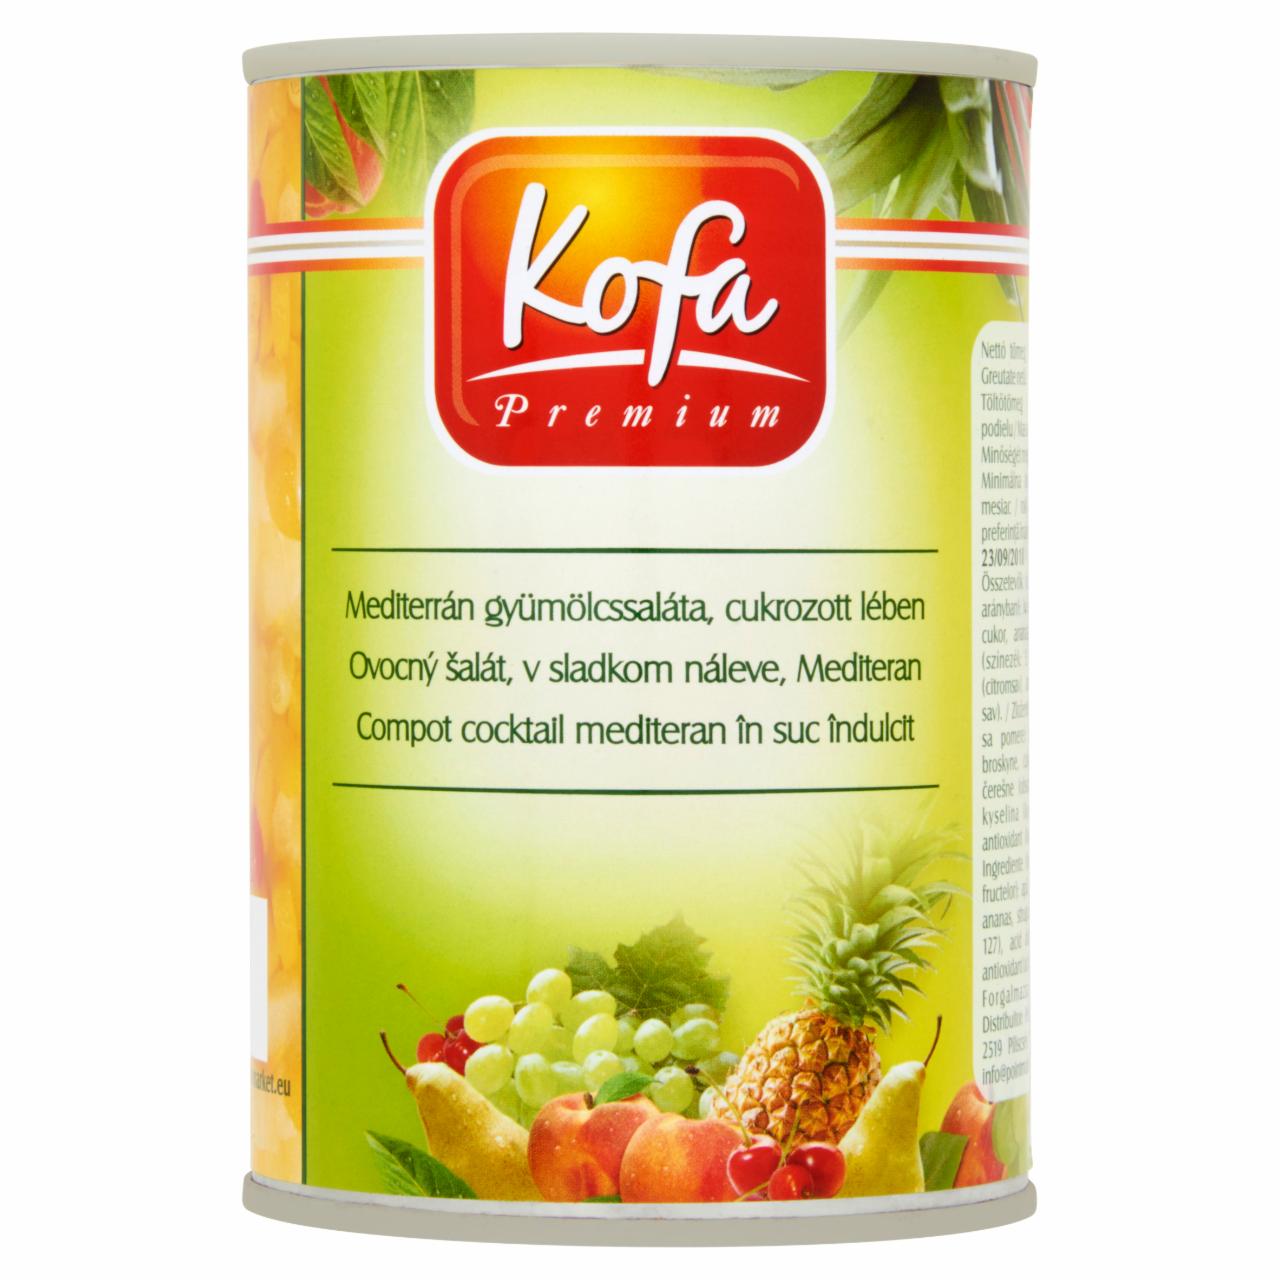 Képek - Kofa Premium mediterrán gyümölcssaláta, cukrozott lében 410 g